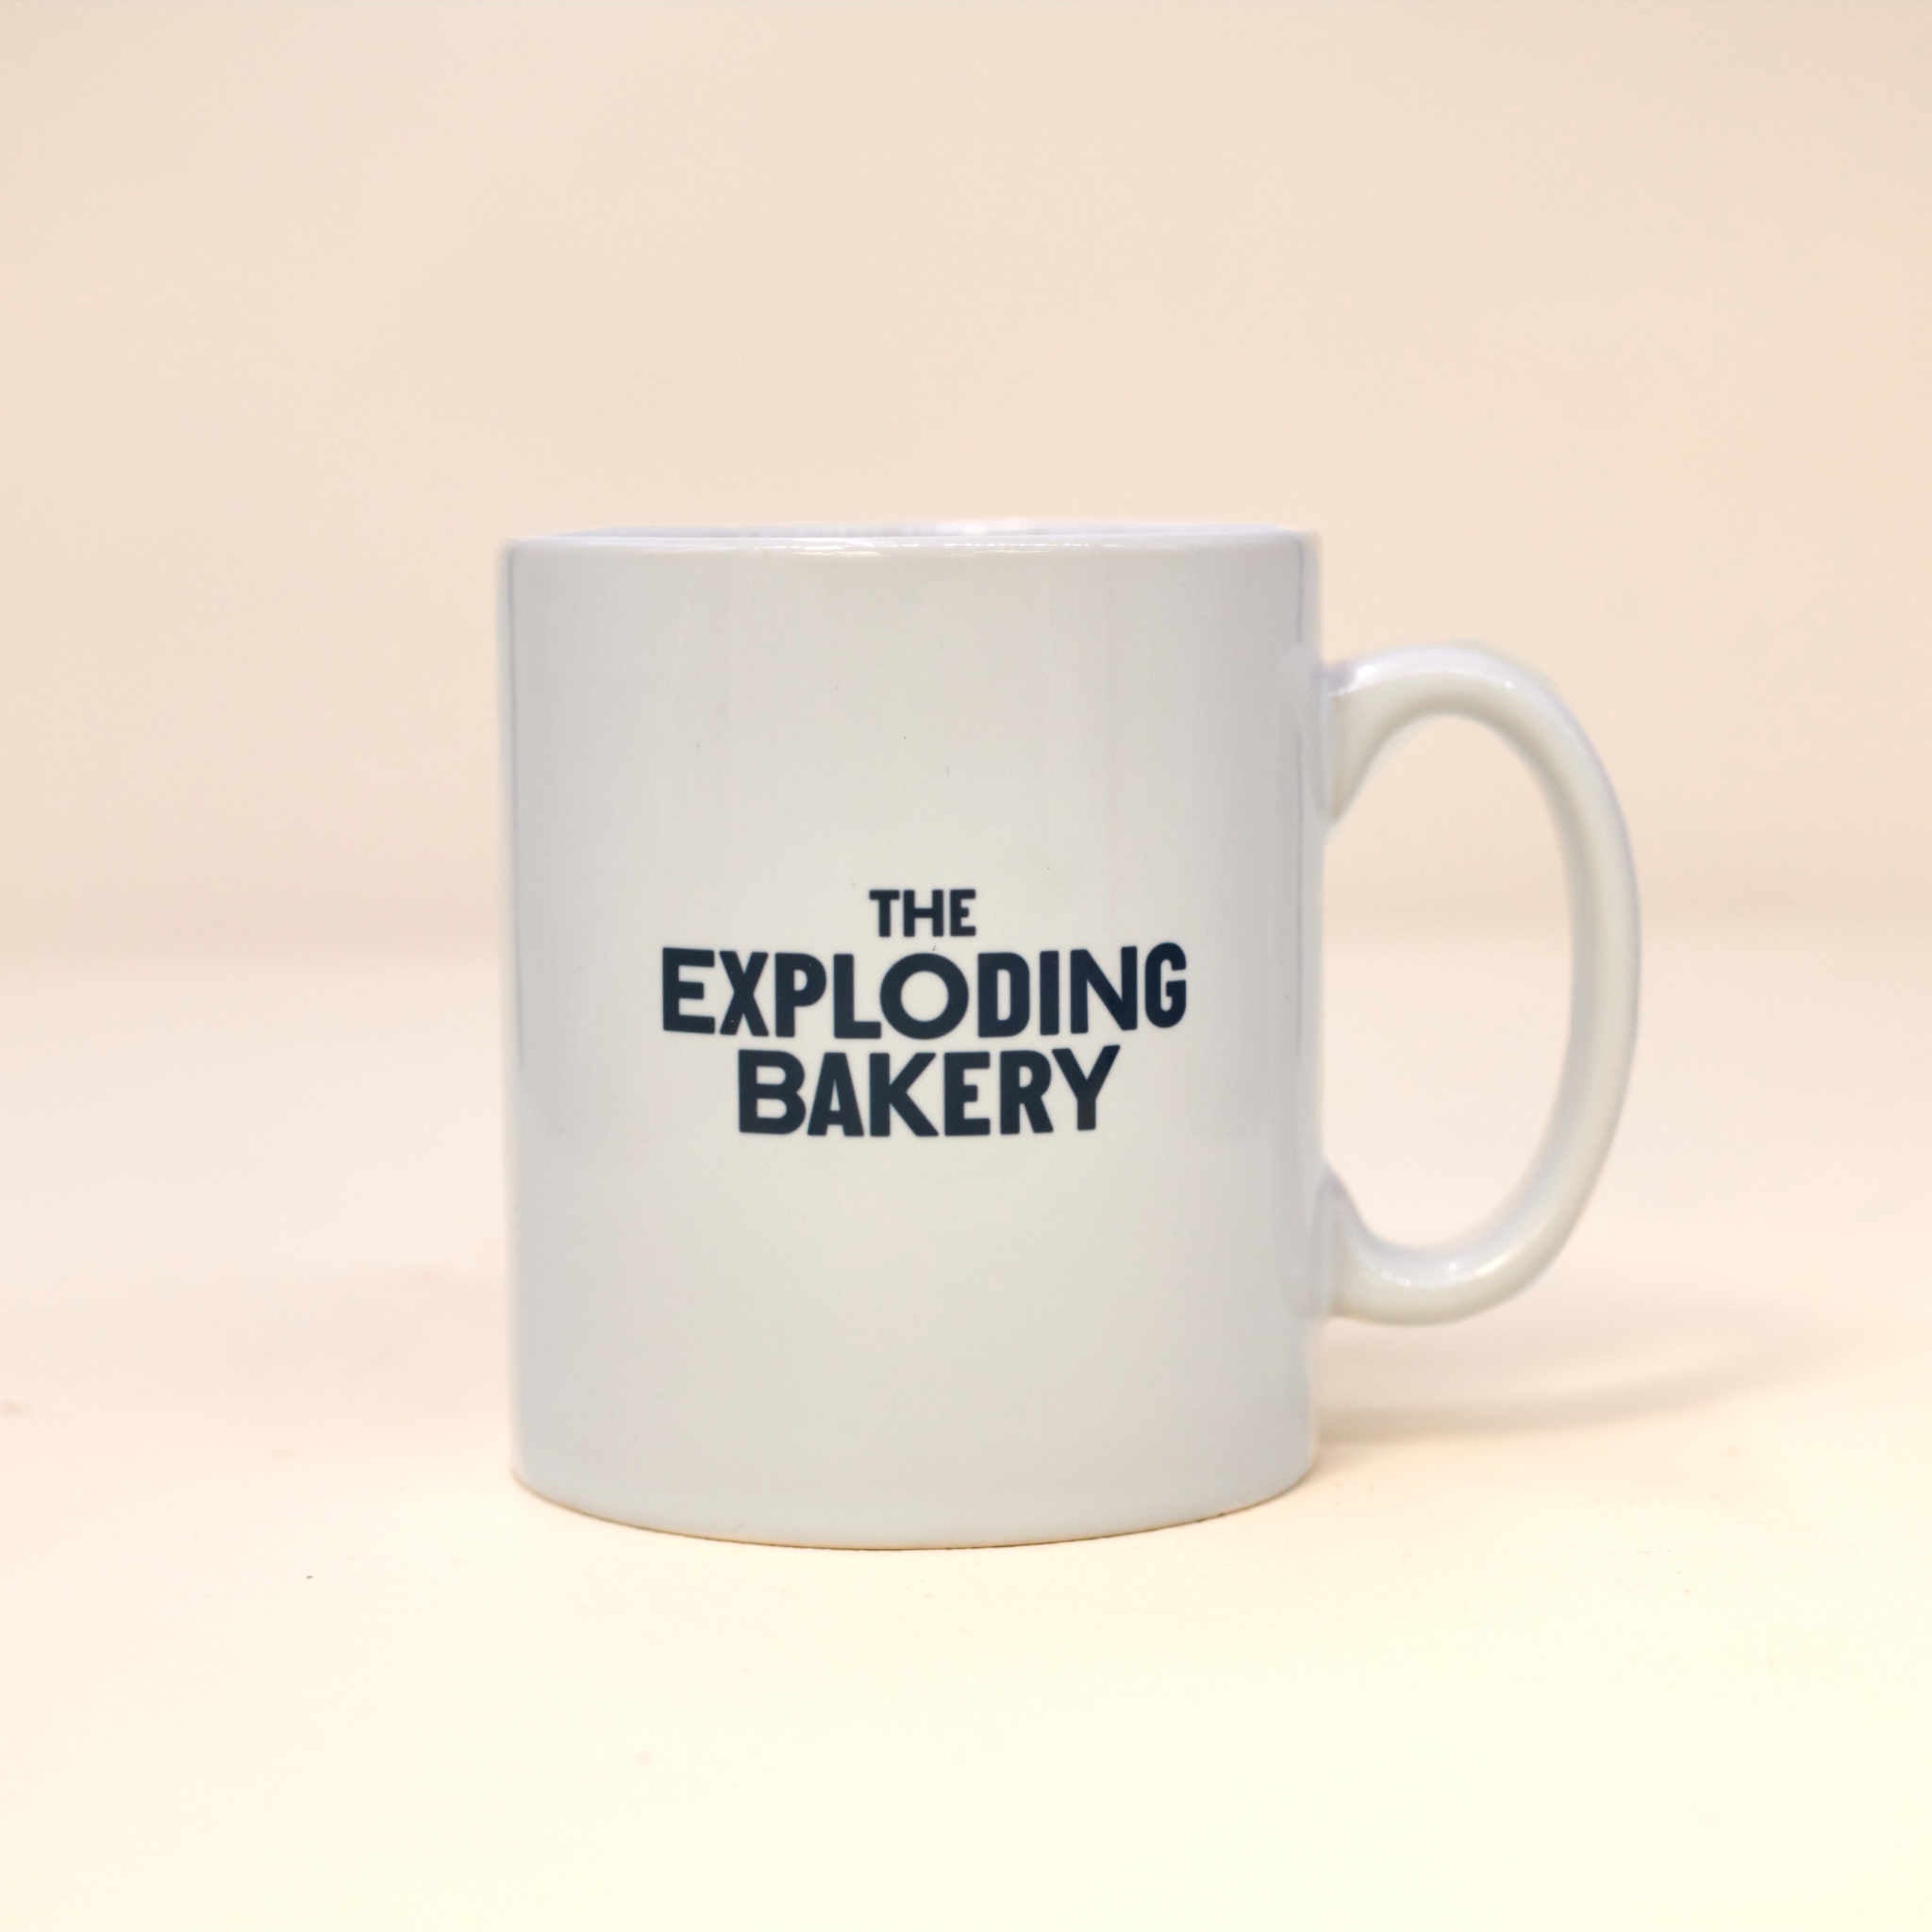 Exploding Bakery mug with the Exploding Bakery logo.